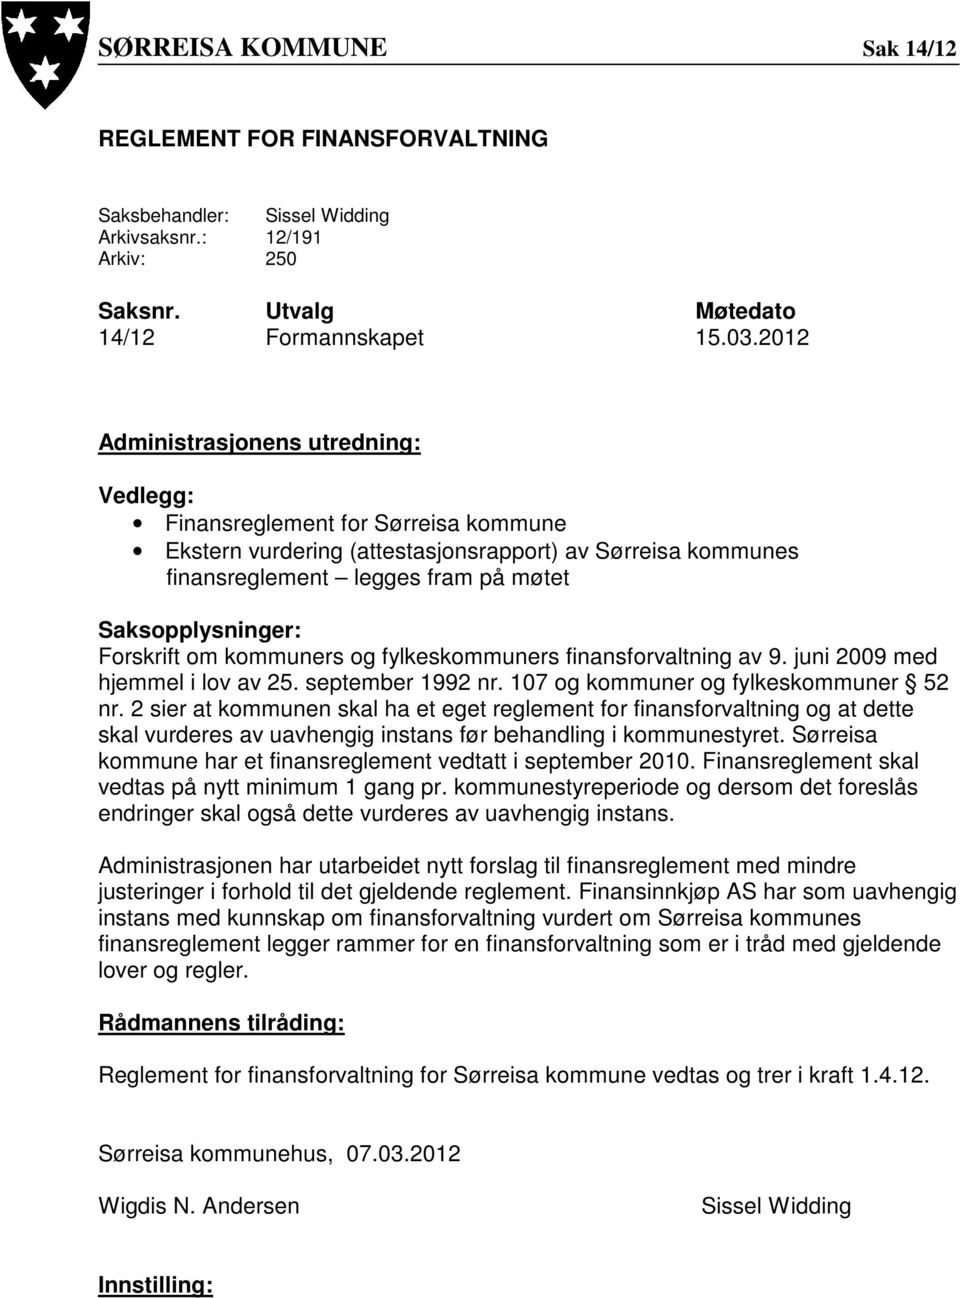 Forskrift om kommuners og fylkeskommuners finansforvaltning av 9. juni 2009 med hjemmel i lov av 25. september 1992 nr. 107 og kommuner og fylkeskommuner 52 nr.